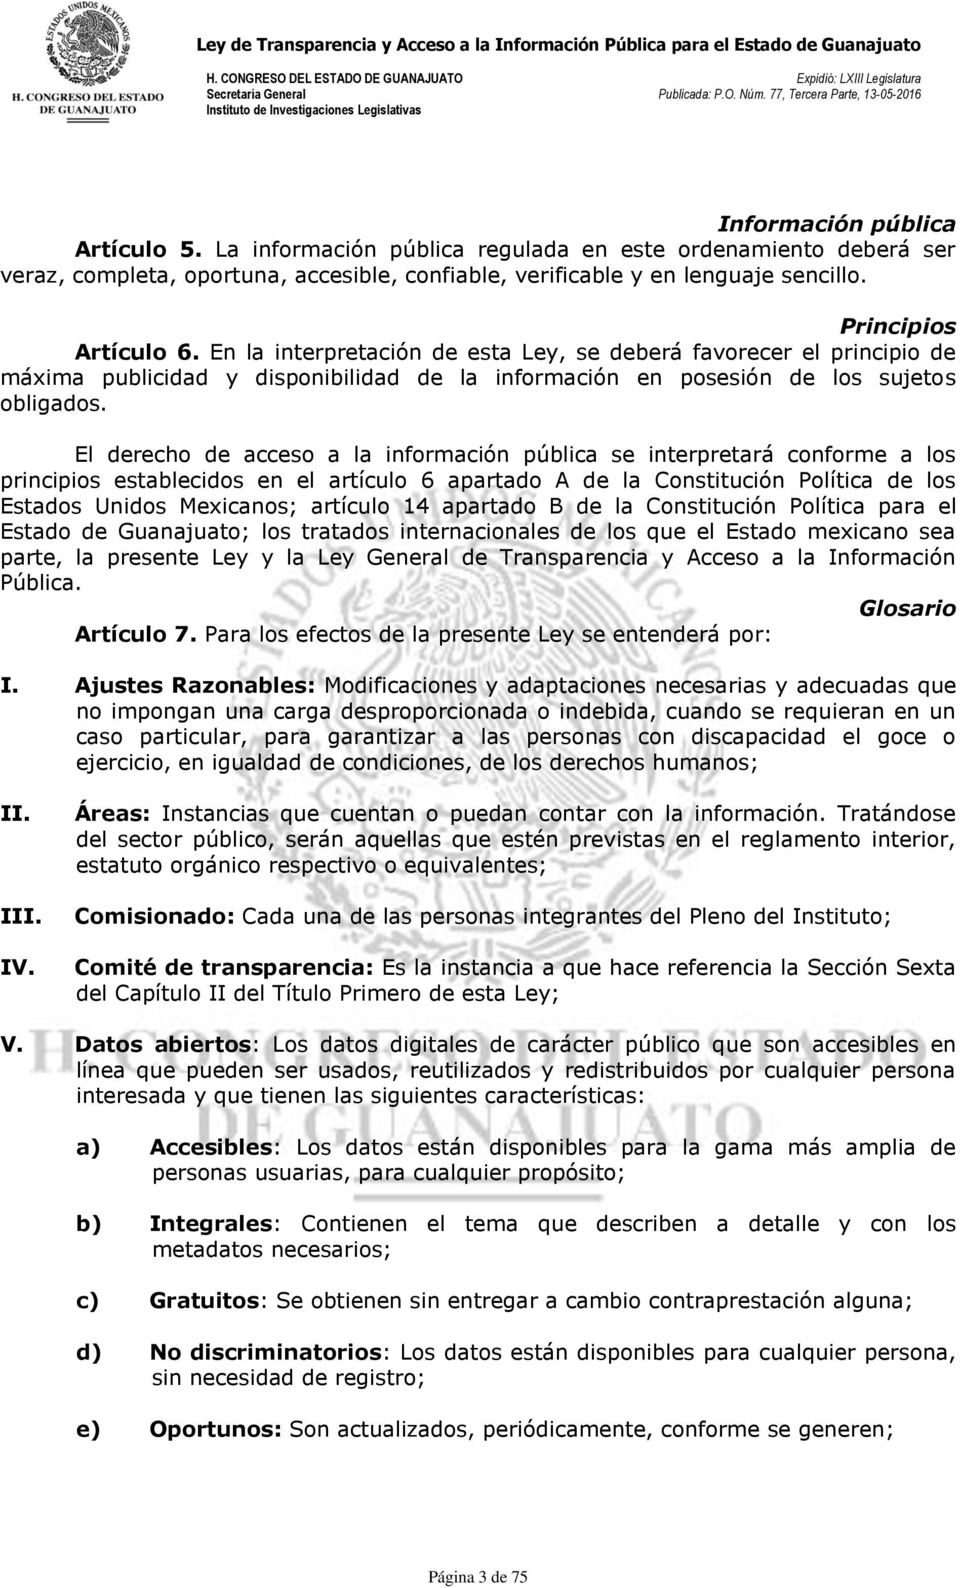 El derecho de acceso a la información pública se interpretará conforme a los principios establecidos en el artículo 6 apartado A de la Constitución Política de los Estados Unidos Mexicanos; artículo